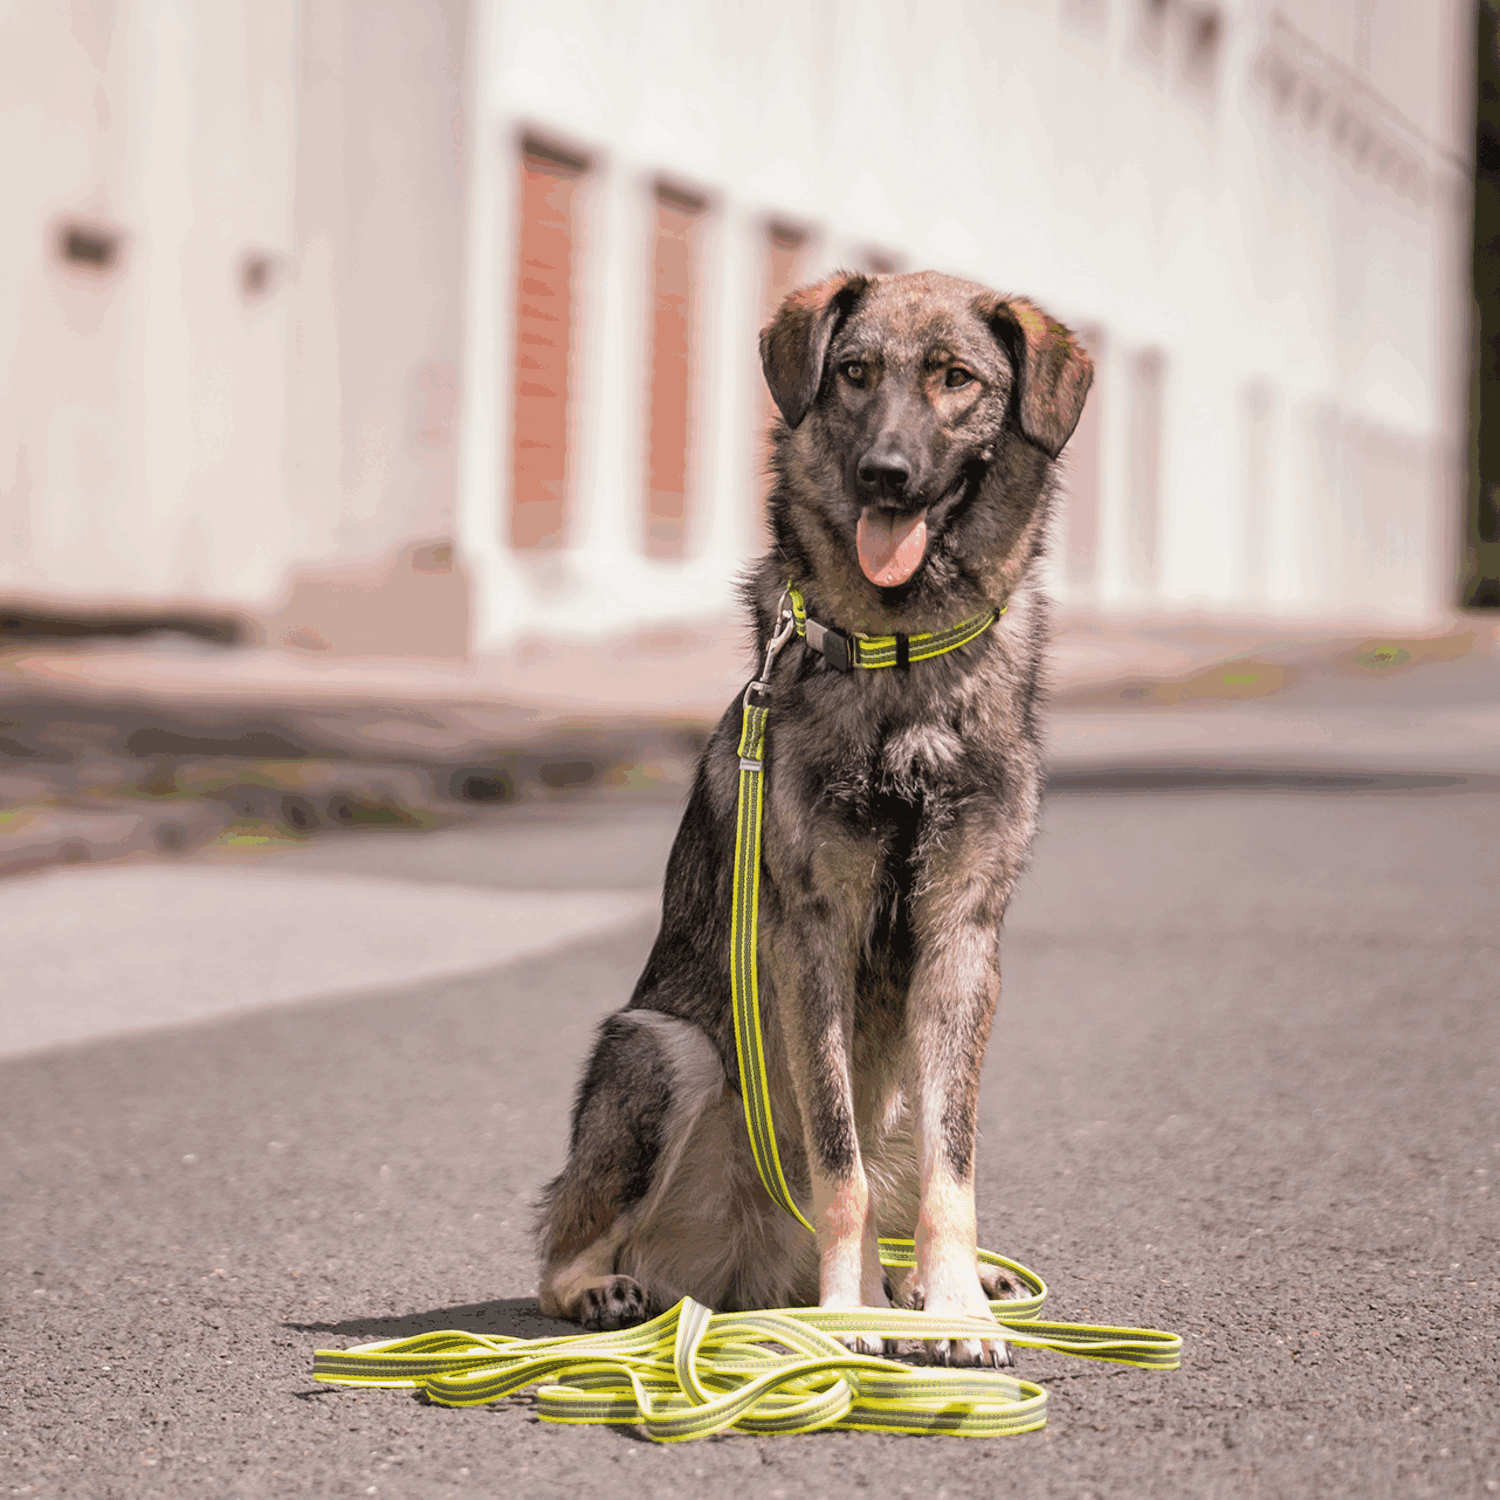 Verstellbares Hundehalsband - reflektierend | 59440-81_2.png | 1704464900